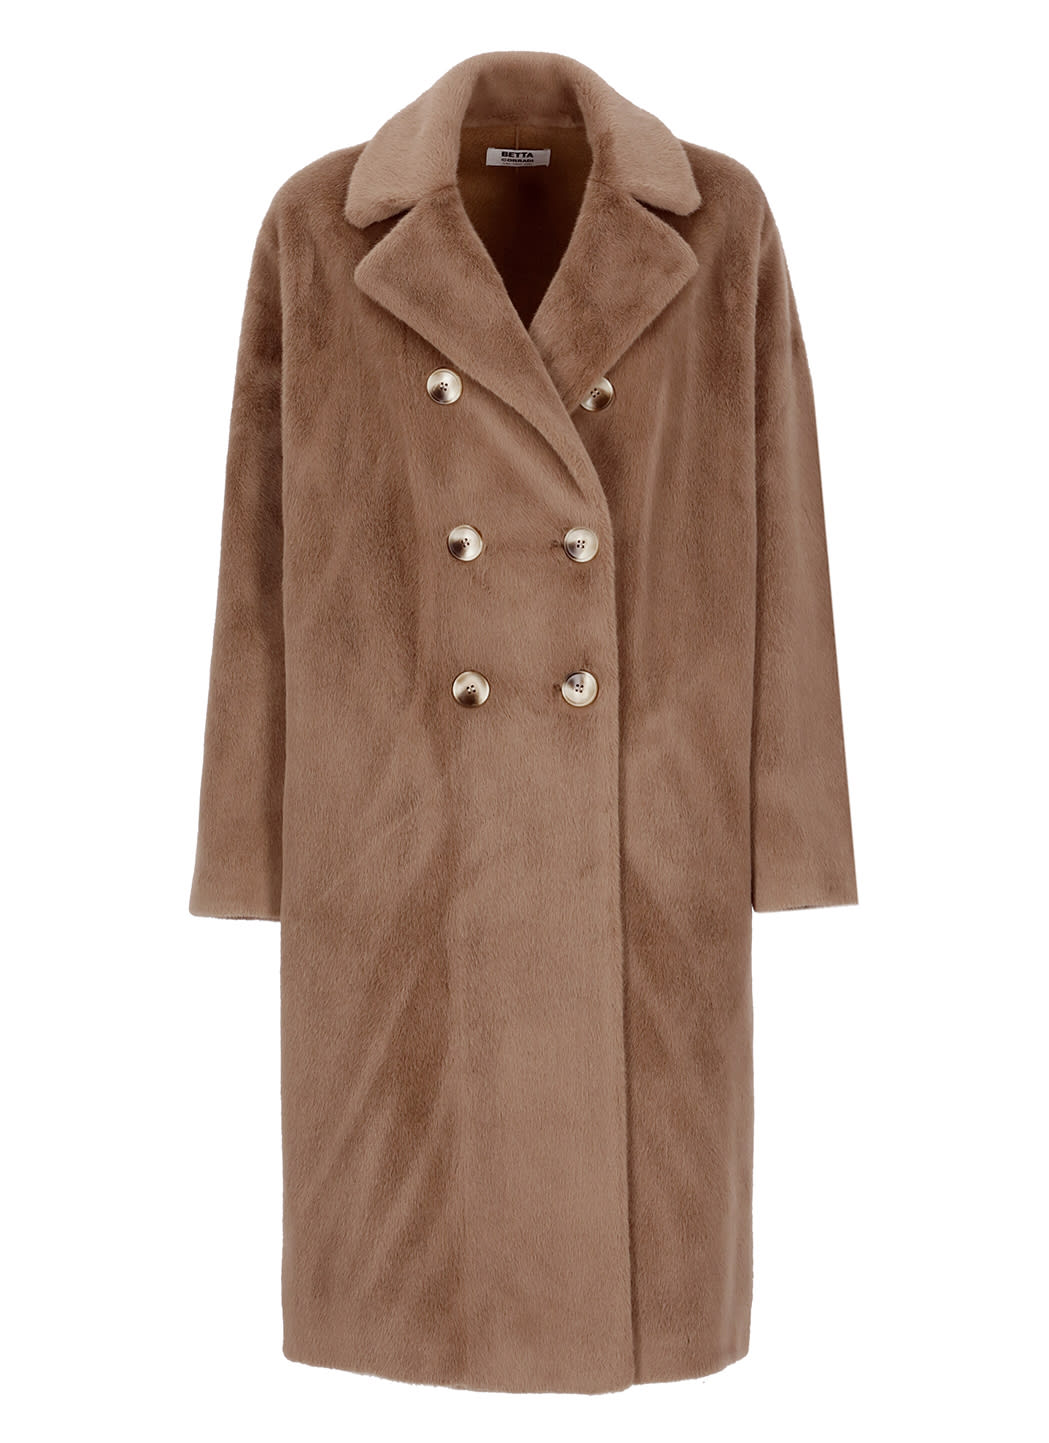 Betta Corradi Eco-fur Double Breasted Coat